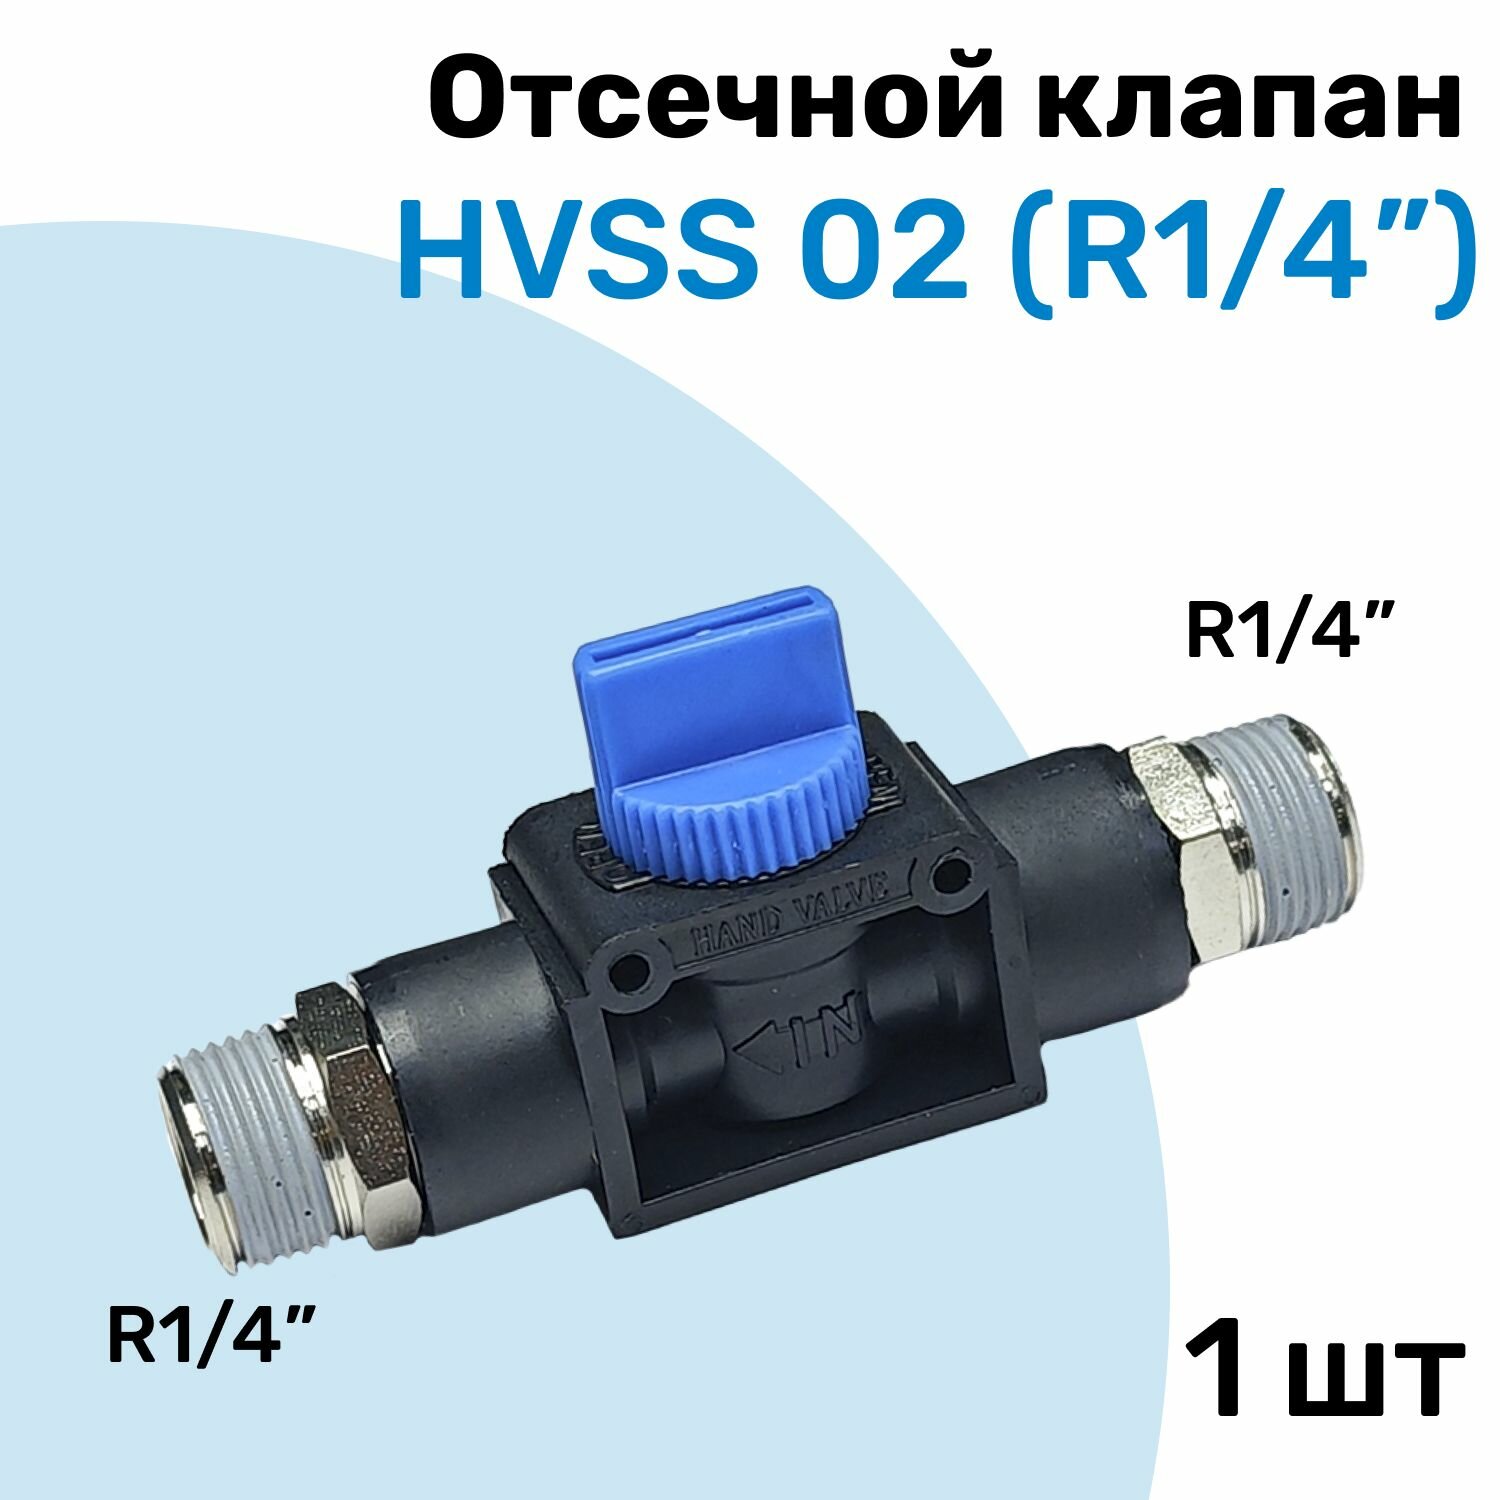 Отсечной клапан HVSS 02, R1/4", Клапан сброса давления, Пневмофитинг NBPT